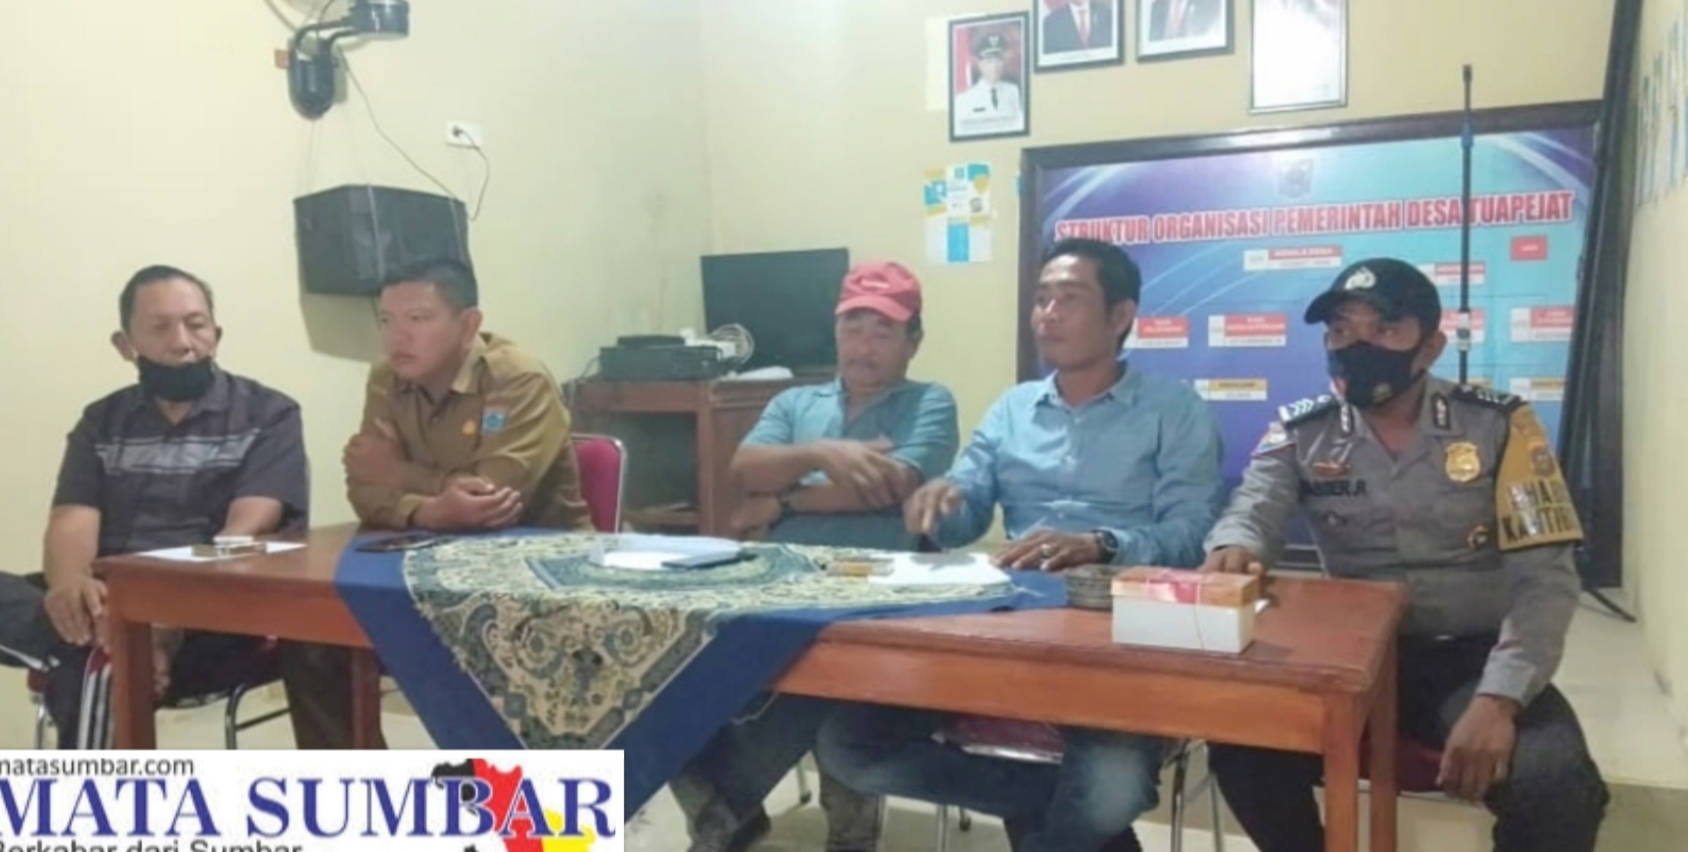 Mediasi Sengketa Tanah di Laboh Dusun Karoniet, Kedua Belah Pihak Sepakat Membagi Tanah